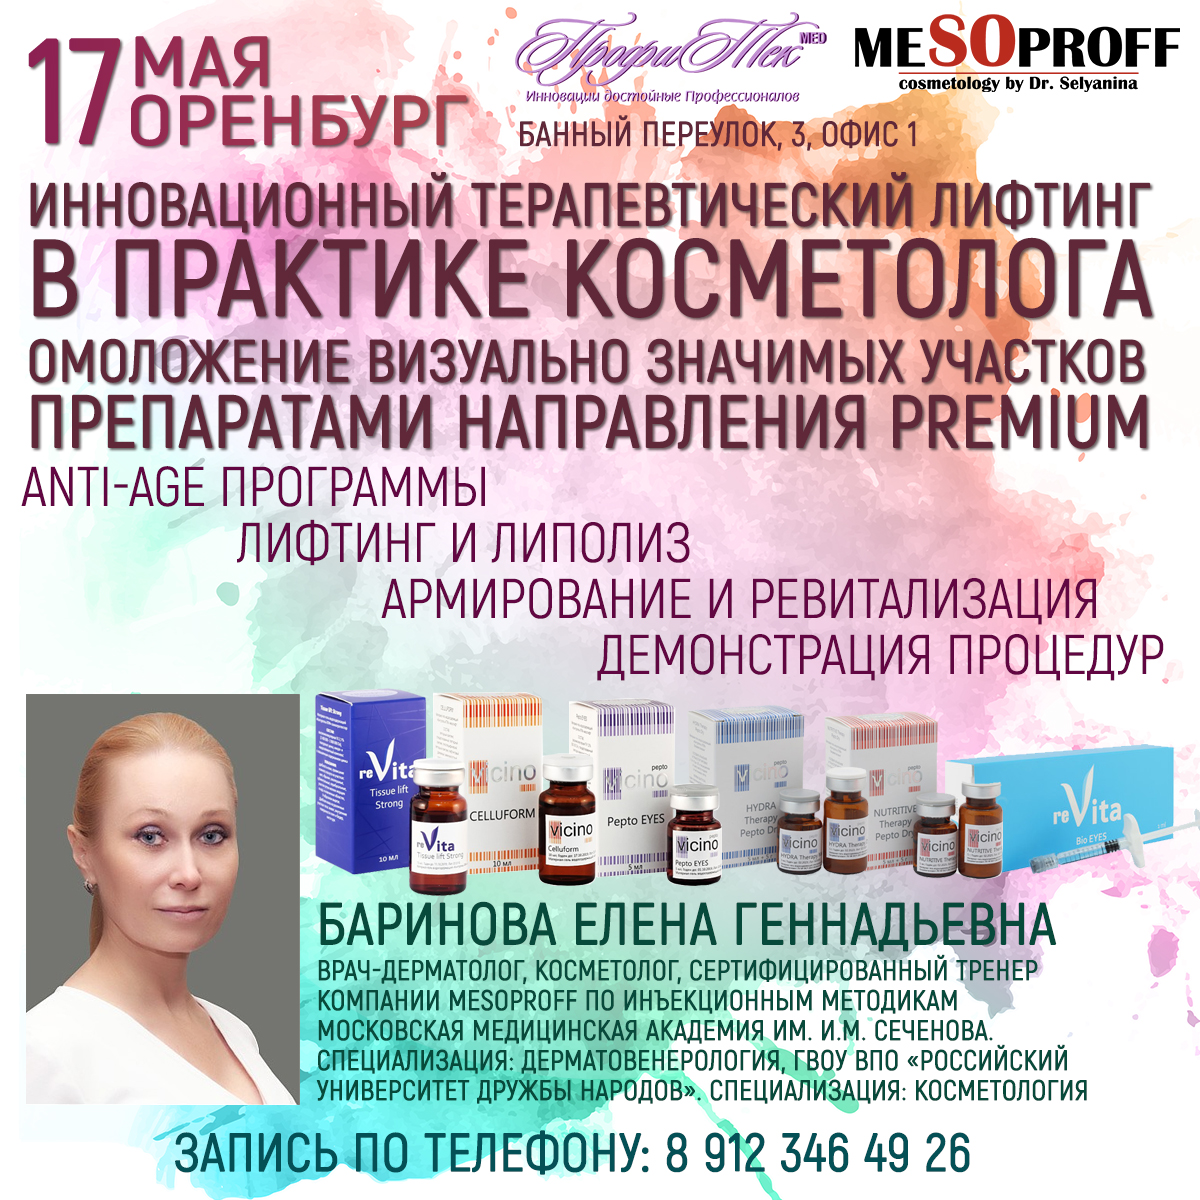 17 мая, Оренбург, Пептиды в косметологии